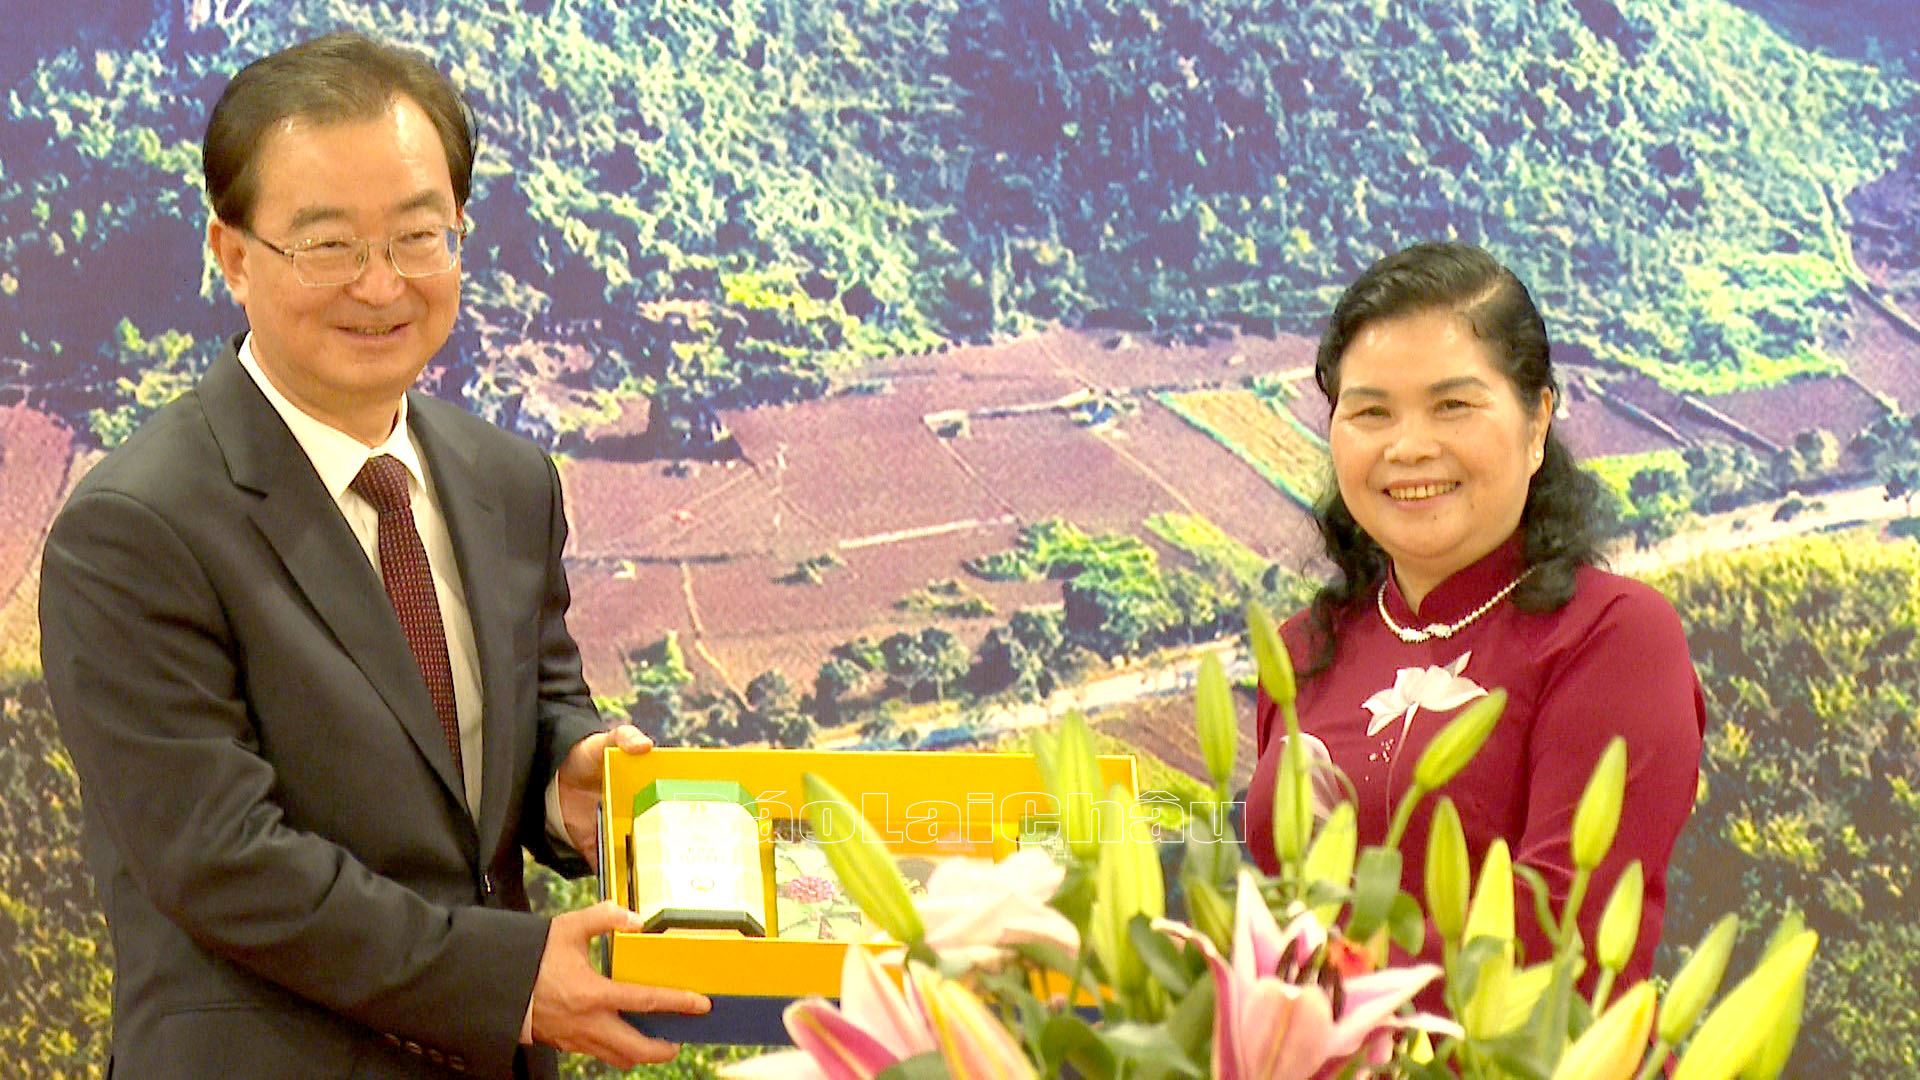 Bí thư Tỉnh ủy Lai Châu Giàng Páo Mỷ tặng quà Bí thư Tỉnh ủy Vân Nam (Trung Quốc) Vương Ninh.